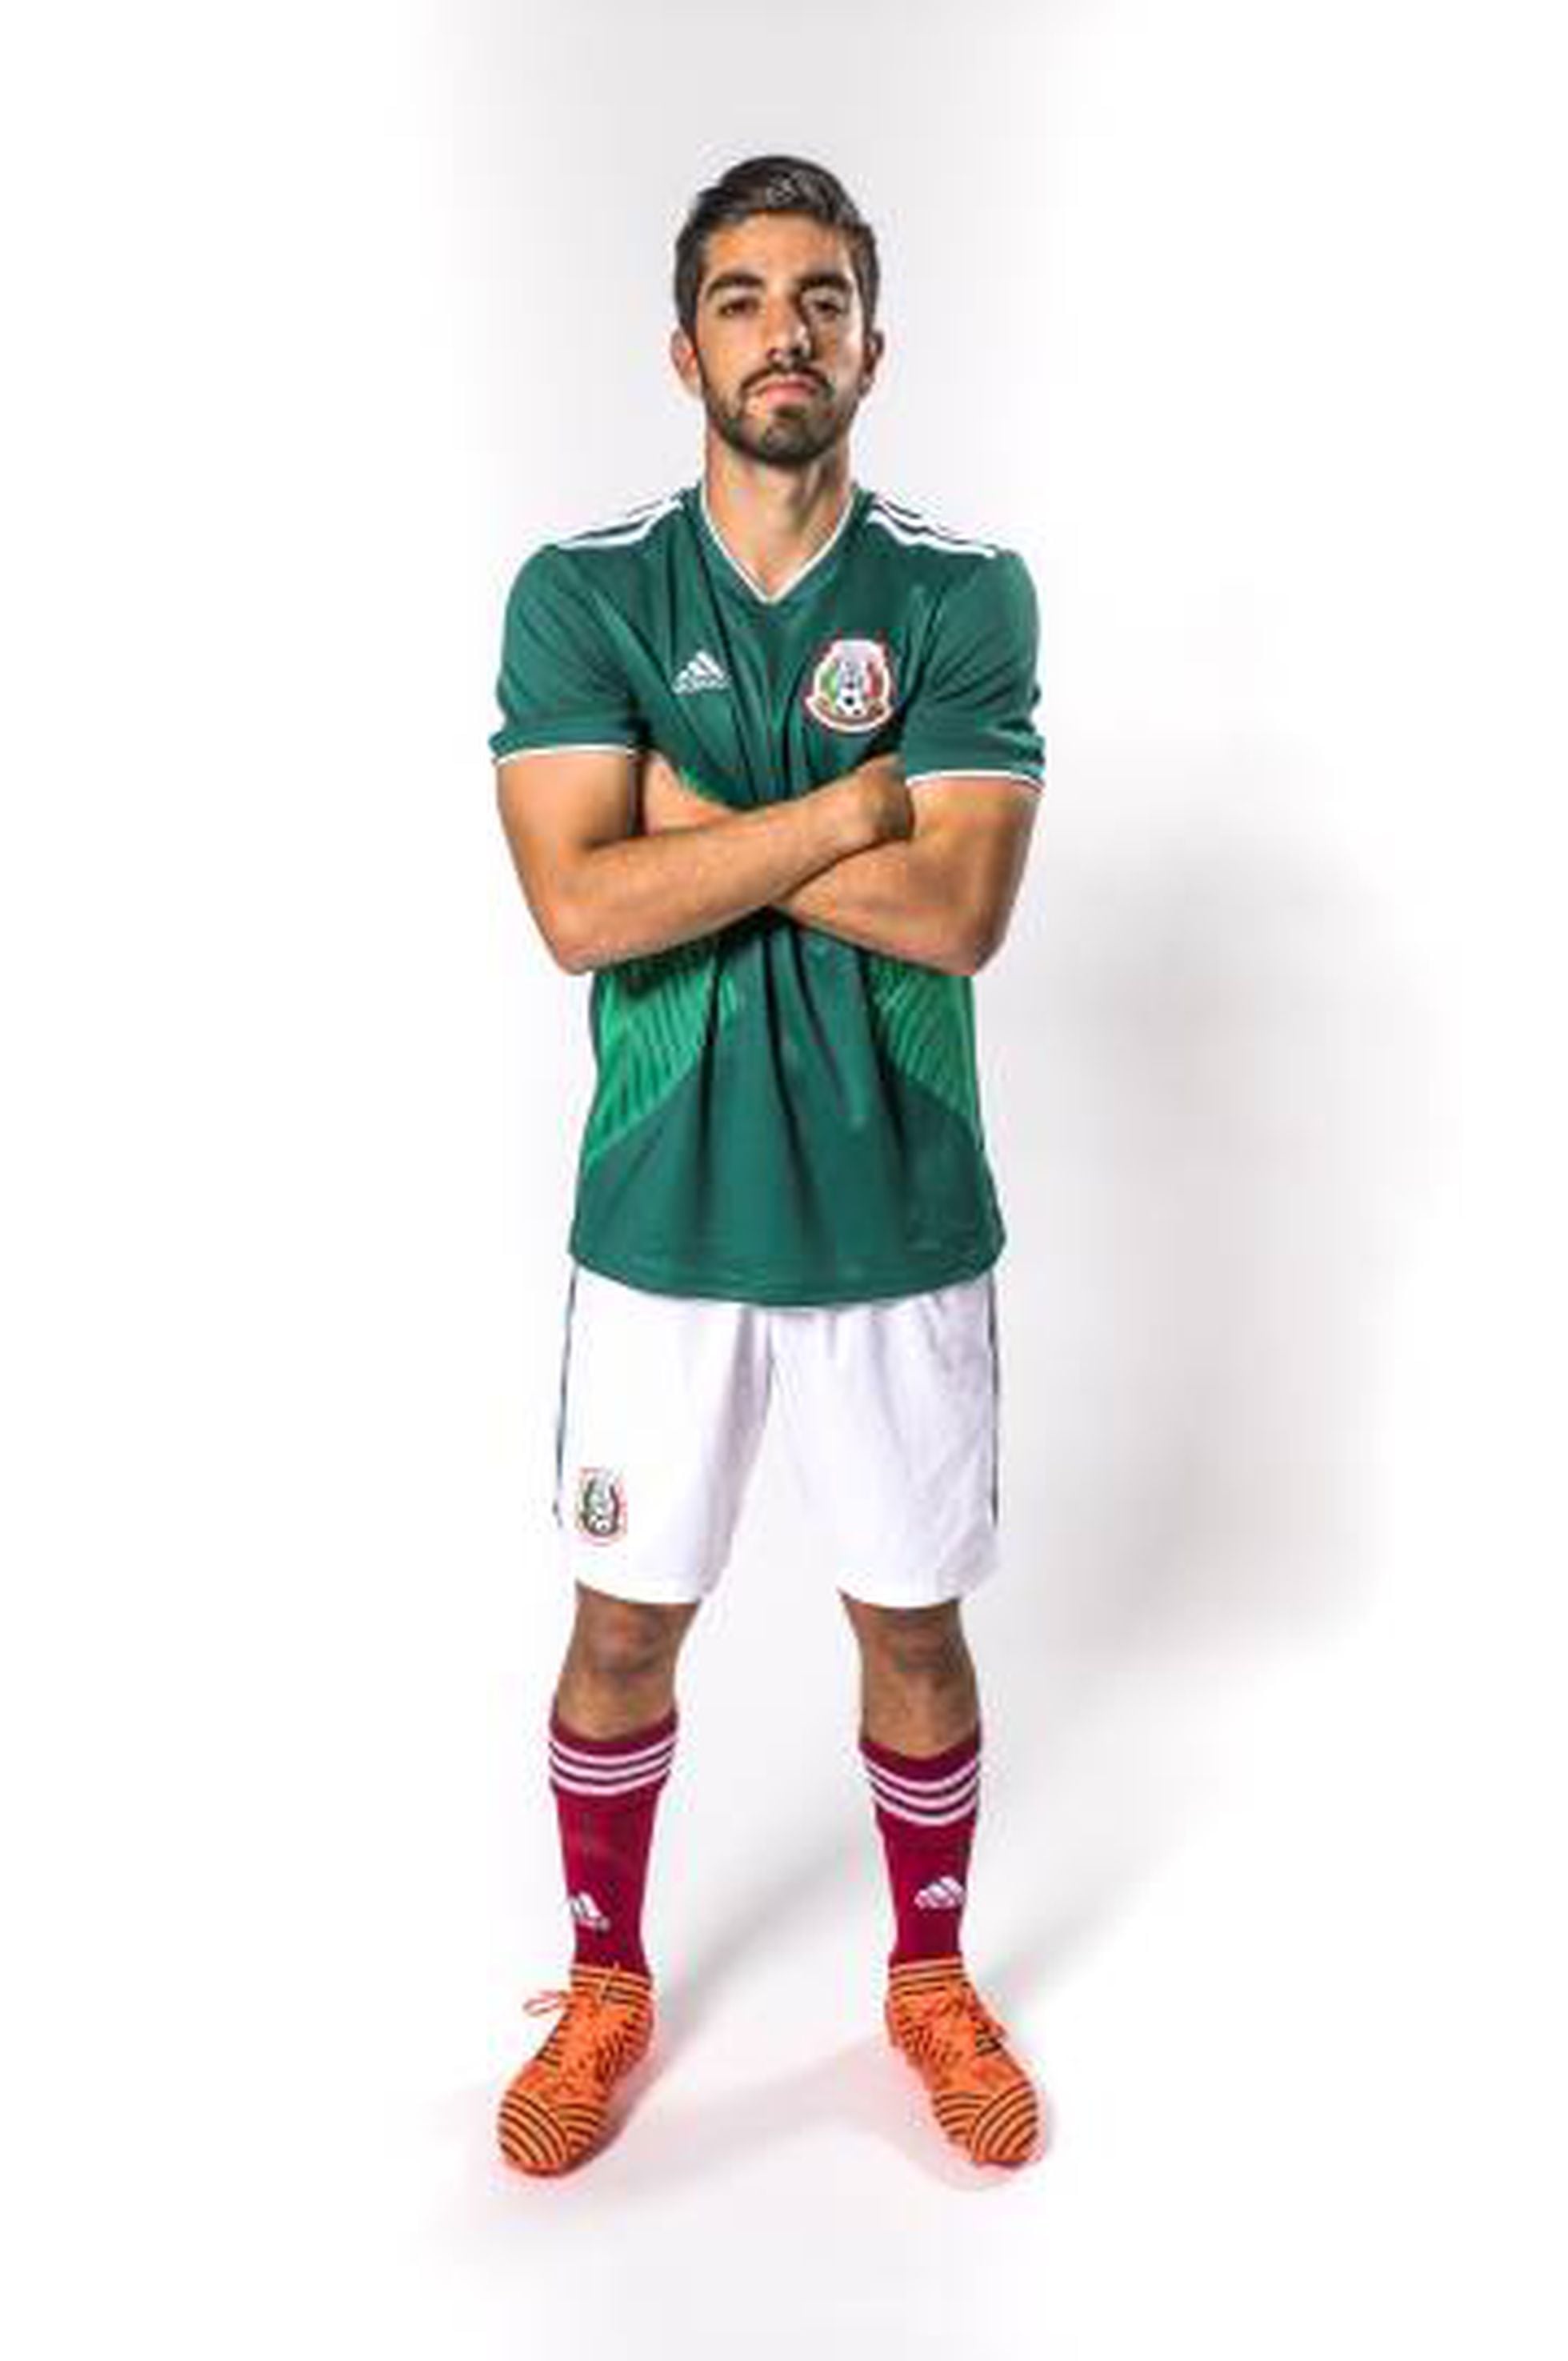 La selección de México presenta uniforme que en el Mundial de Rusia | Deportes | EL PAÍS